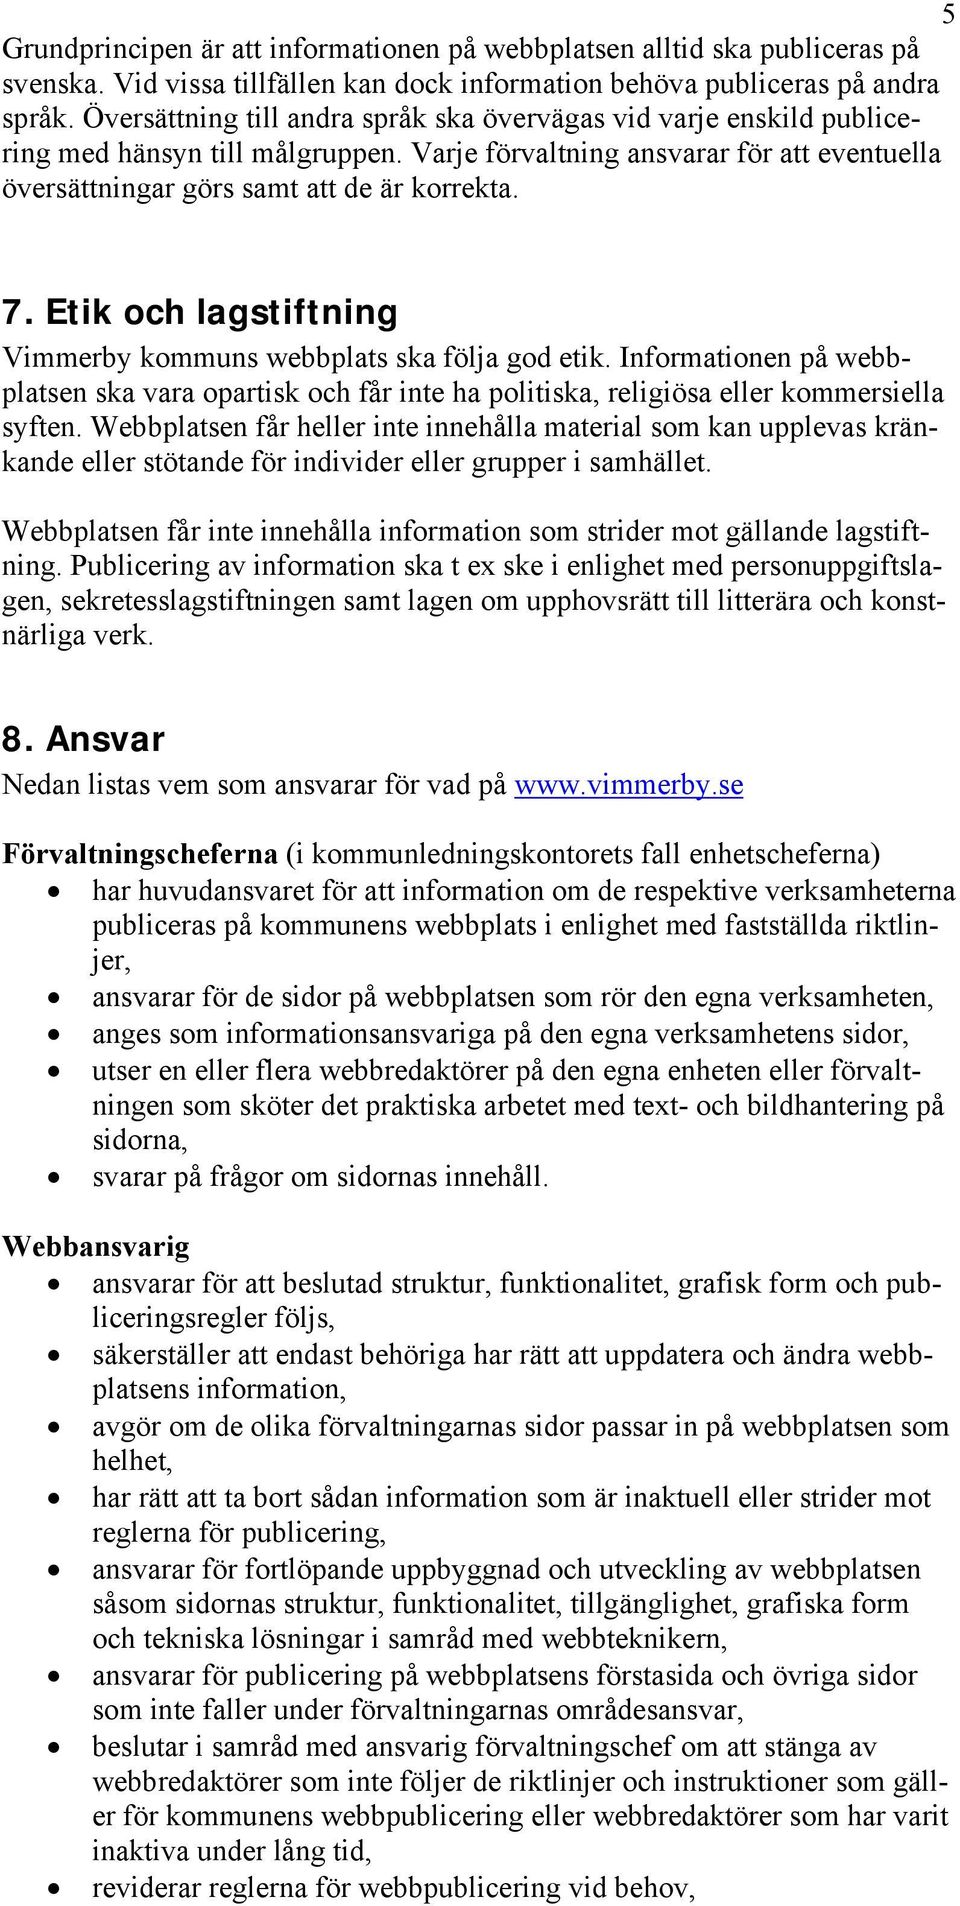 Etik och lagstiftning Vimmerby kommuns webbplats ska följa god etik. Informationen på webbplatsen ska vara opartisk och får inte ha politiska, religiösa eller kommersiella syften.